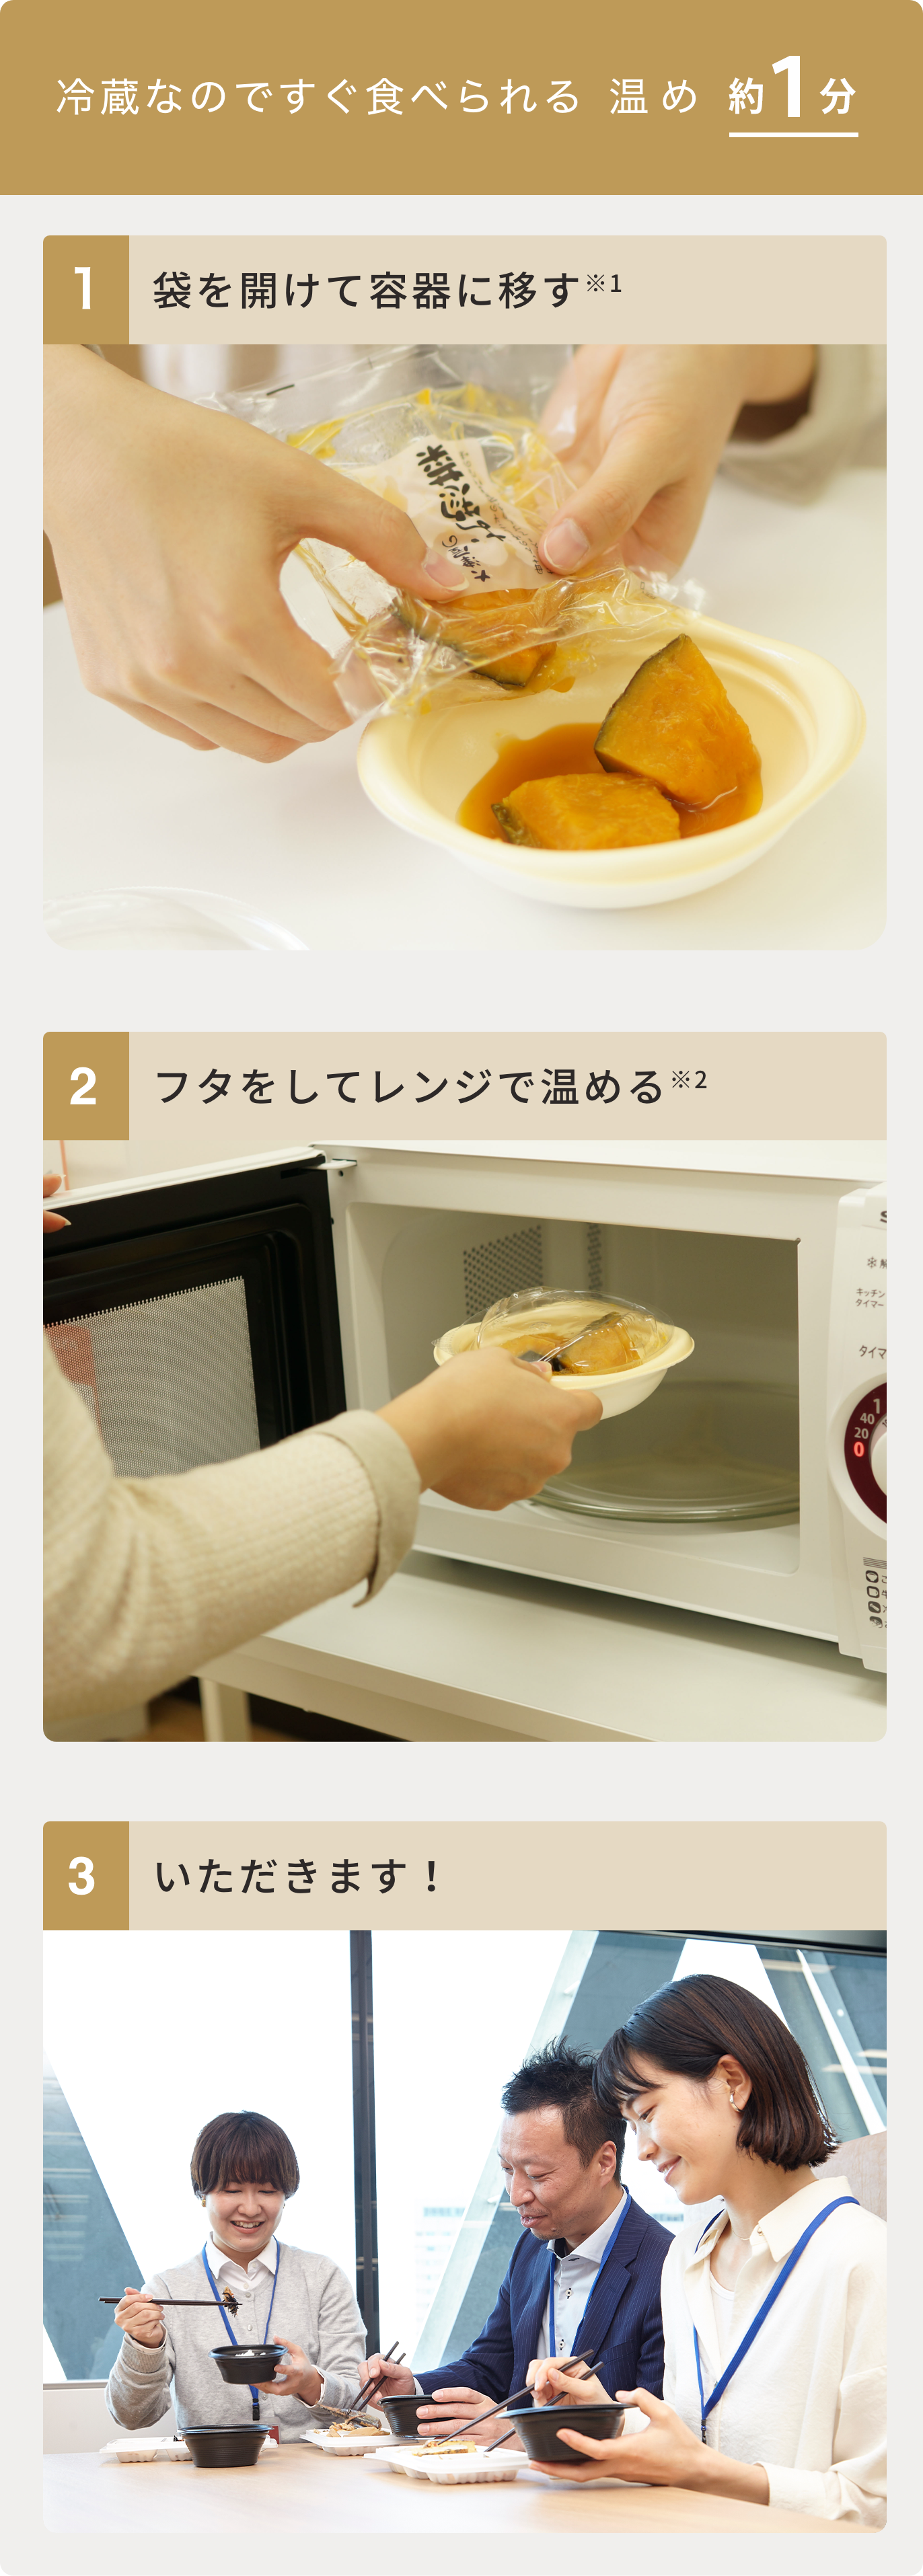 (温め目安1分)1.袋を開けて容器に移す、2.フタをしてレンジで温める、3.いただきます！